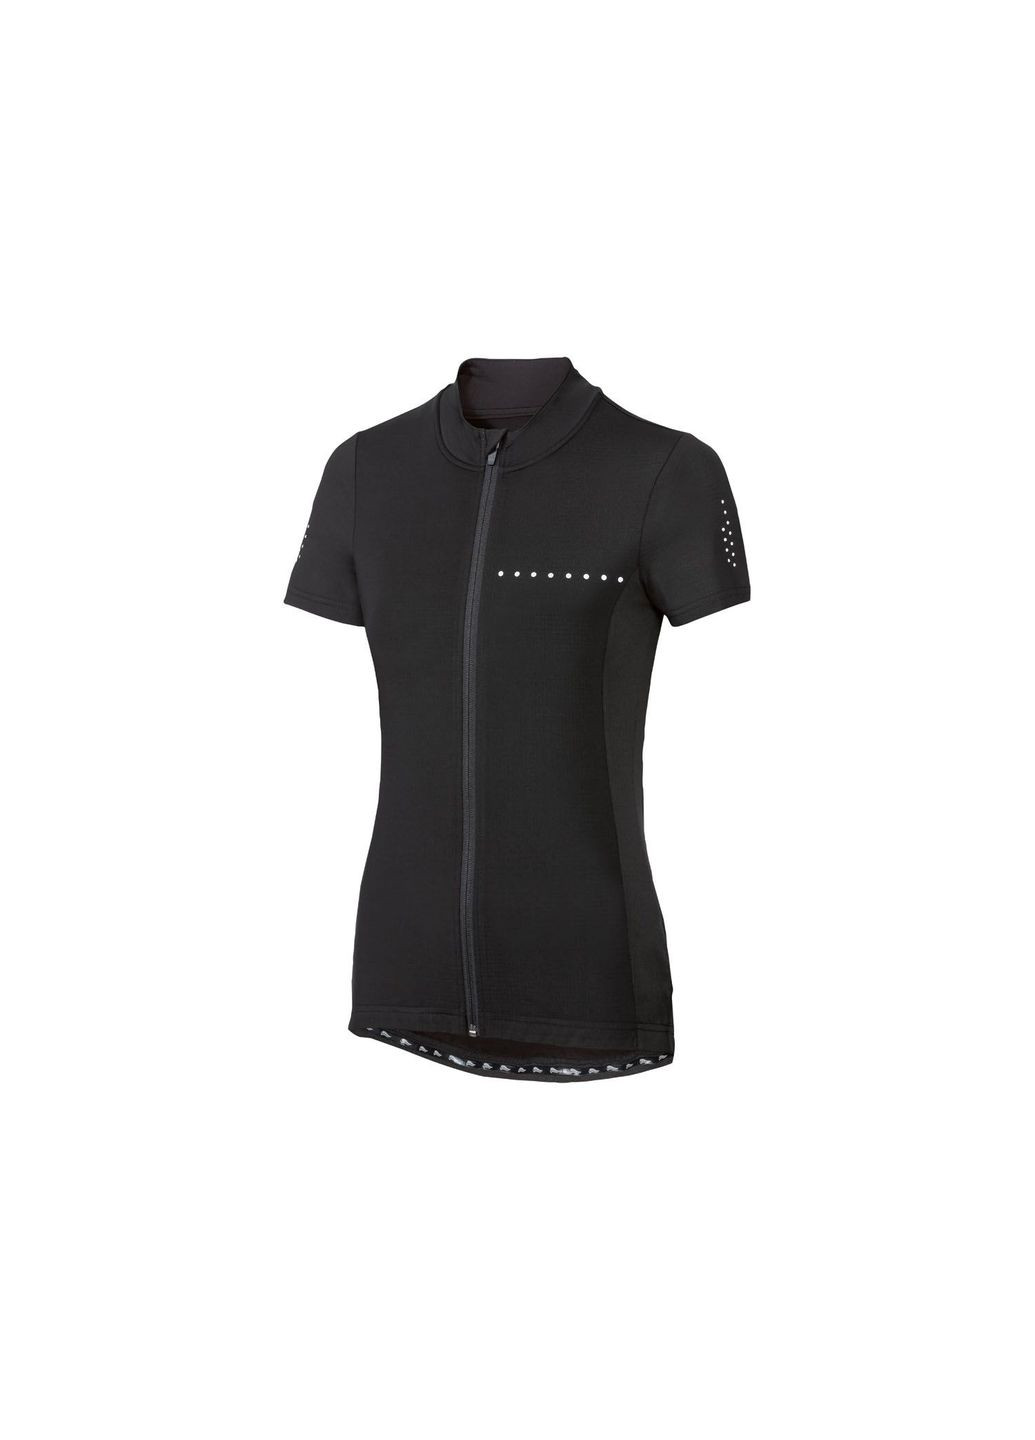 Черная велосипедная футболка на молнии для женщины 359147 Crivit